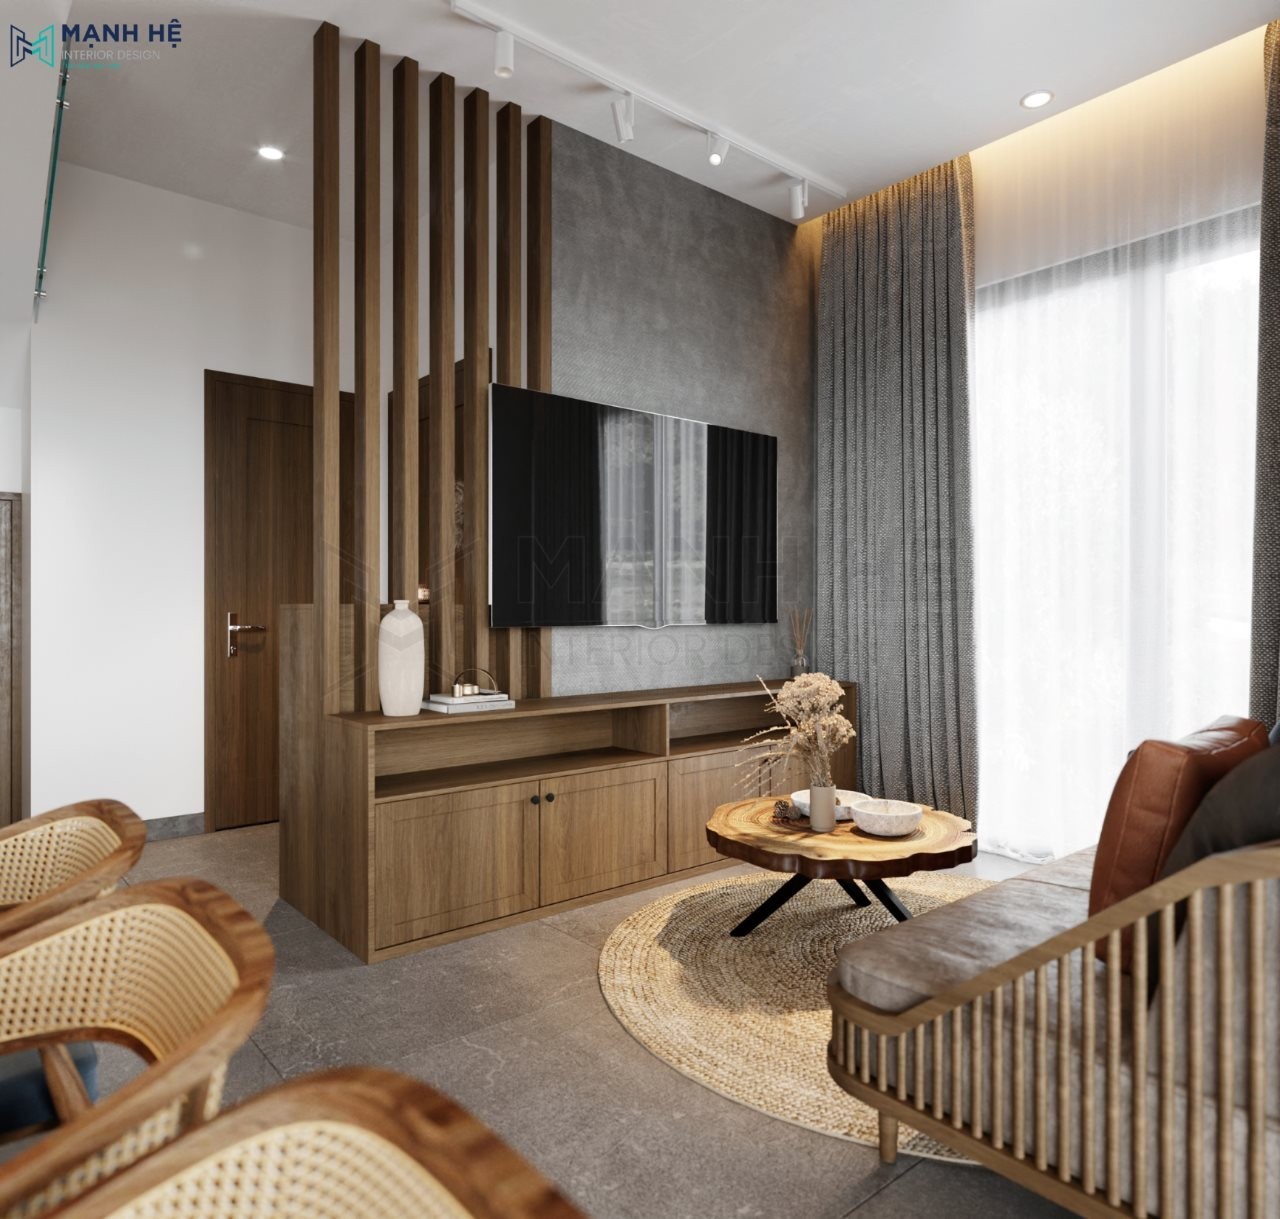 Vách lam gỗ đơn giản cho nội thất phòng khách hiện đại